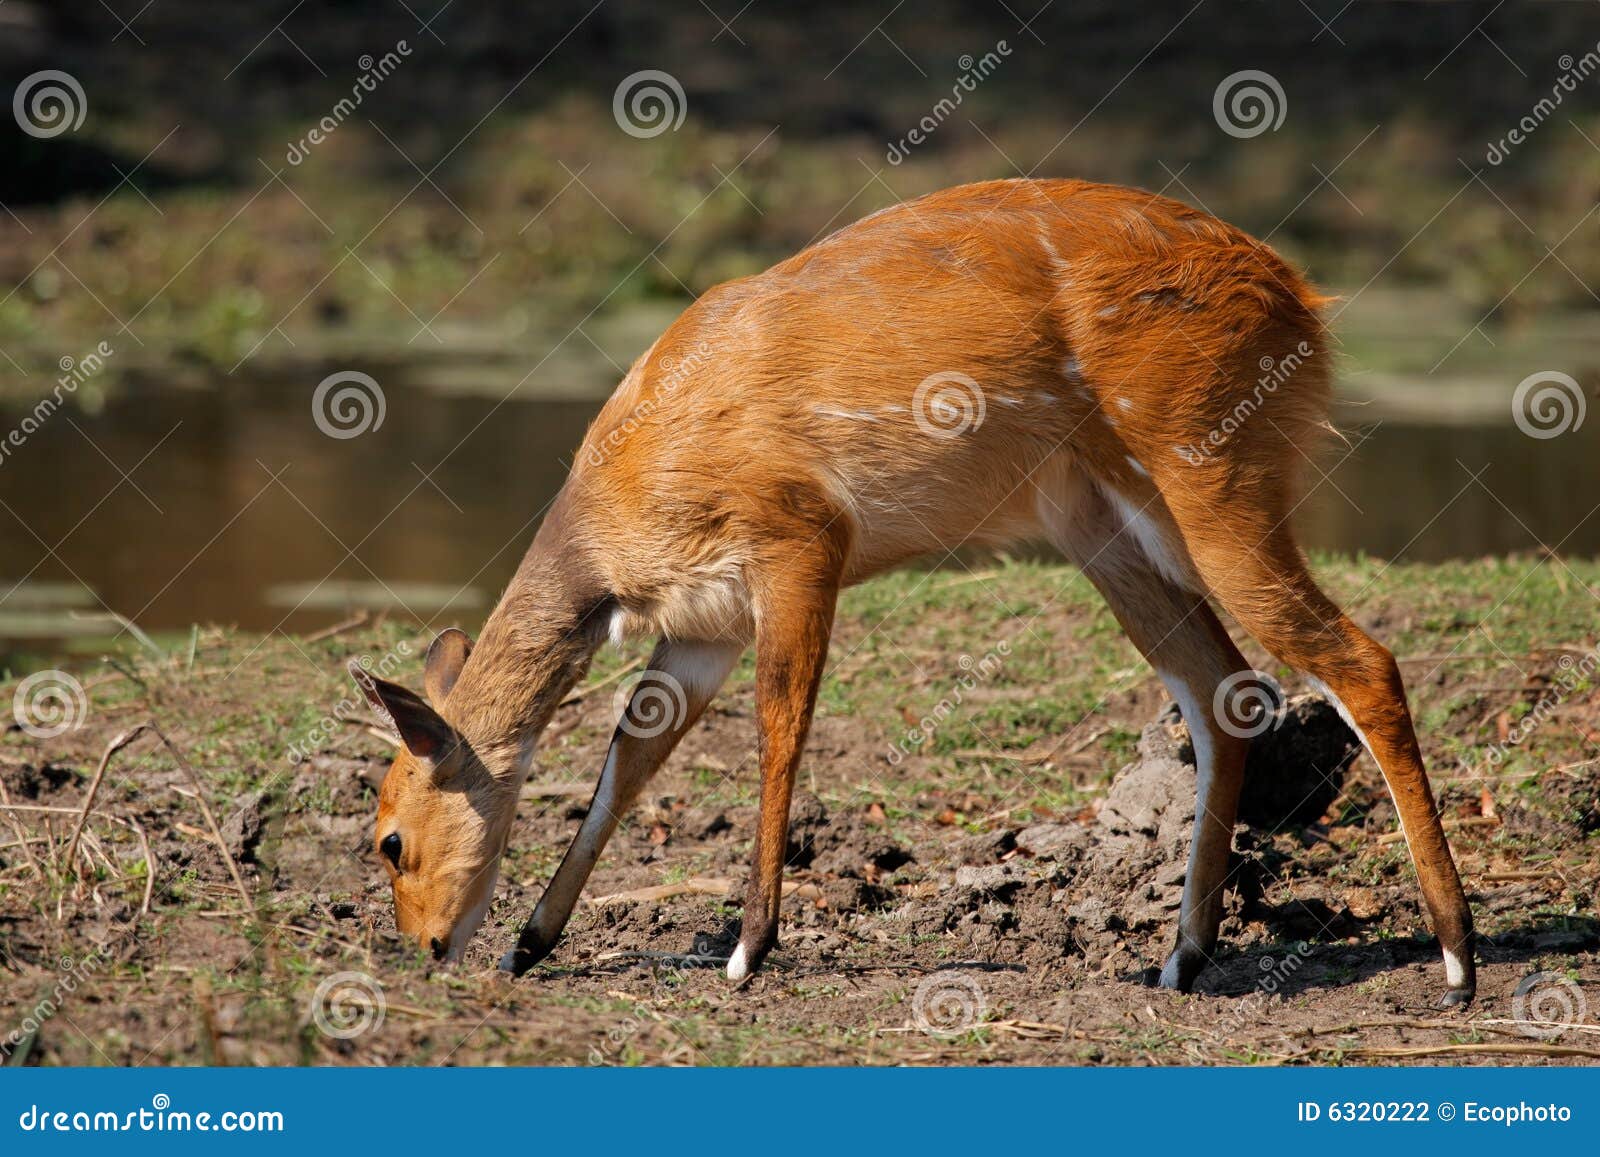 bushbuck antelope